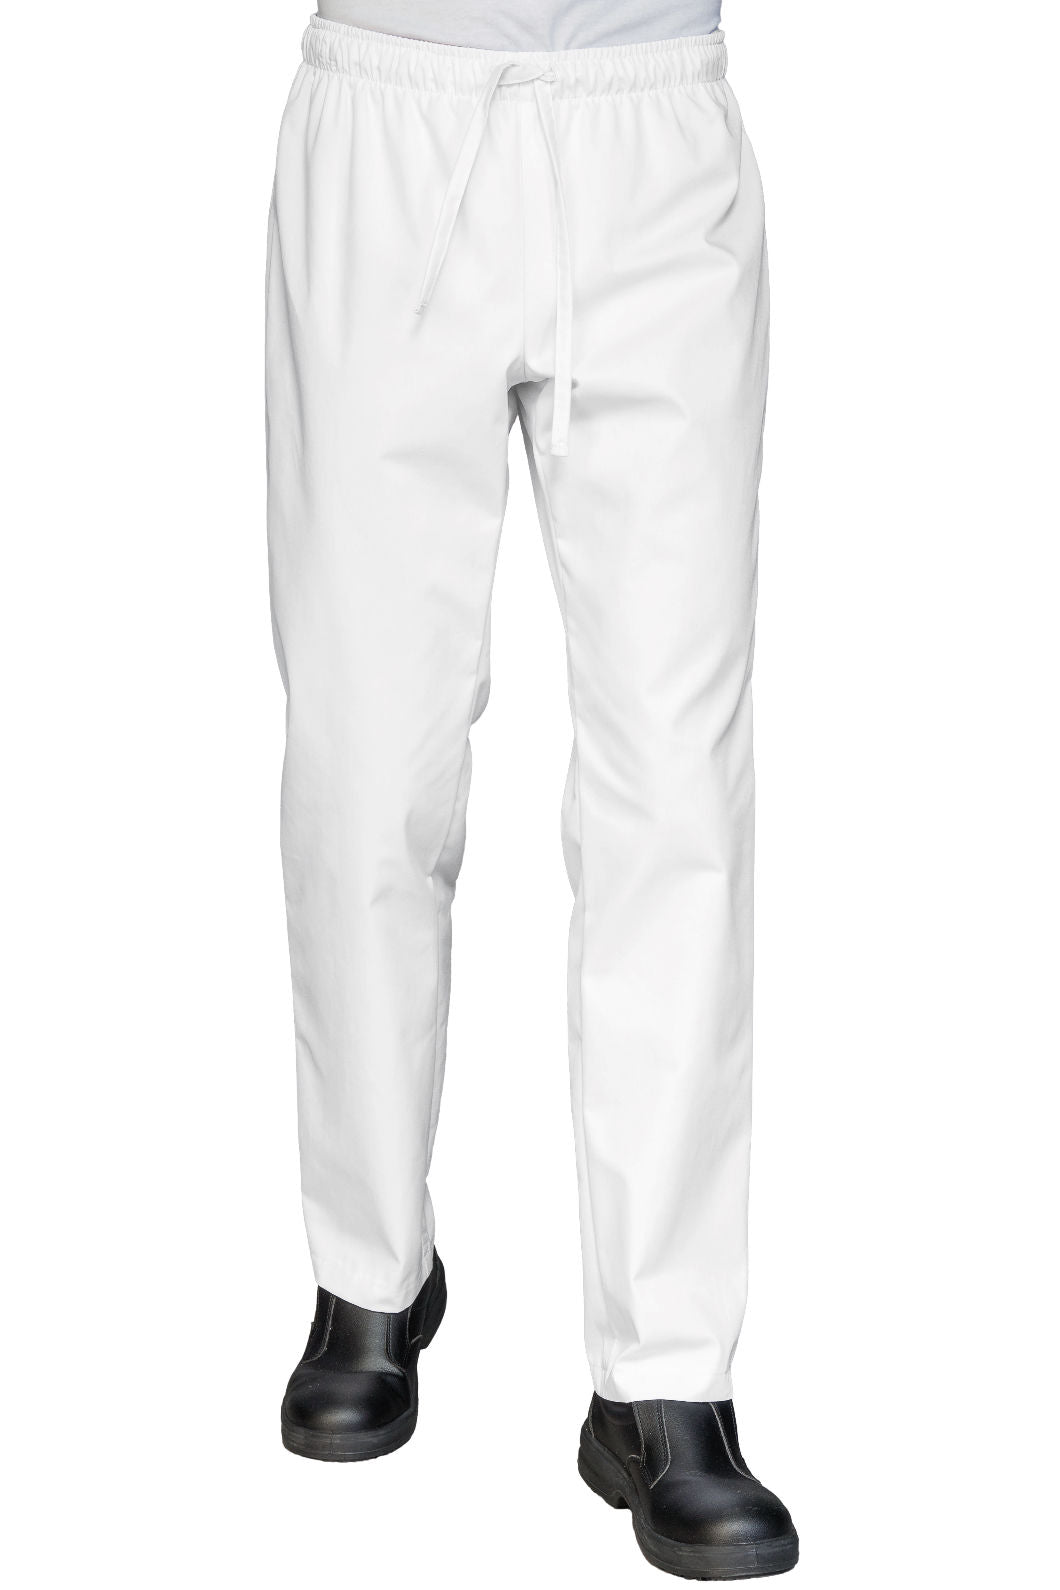 pantalone-con-elastico-in-vita-bianco-isacco-043810